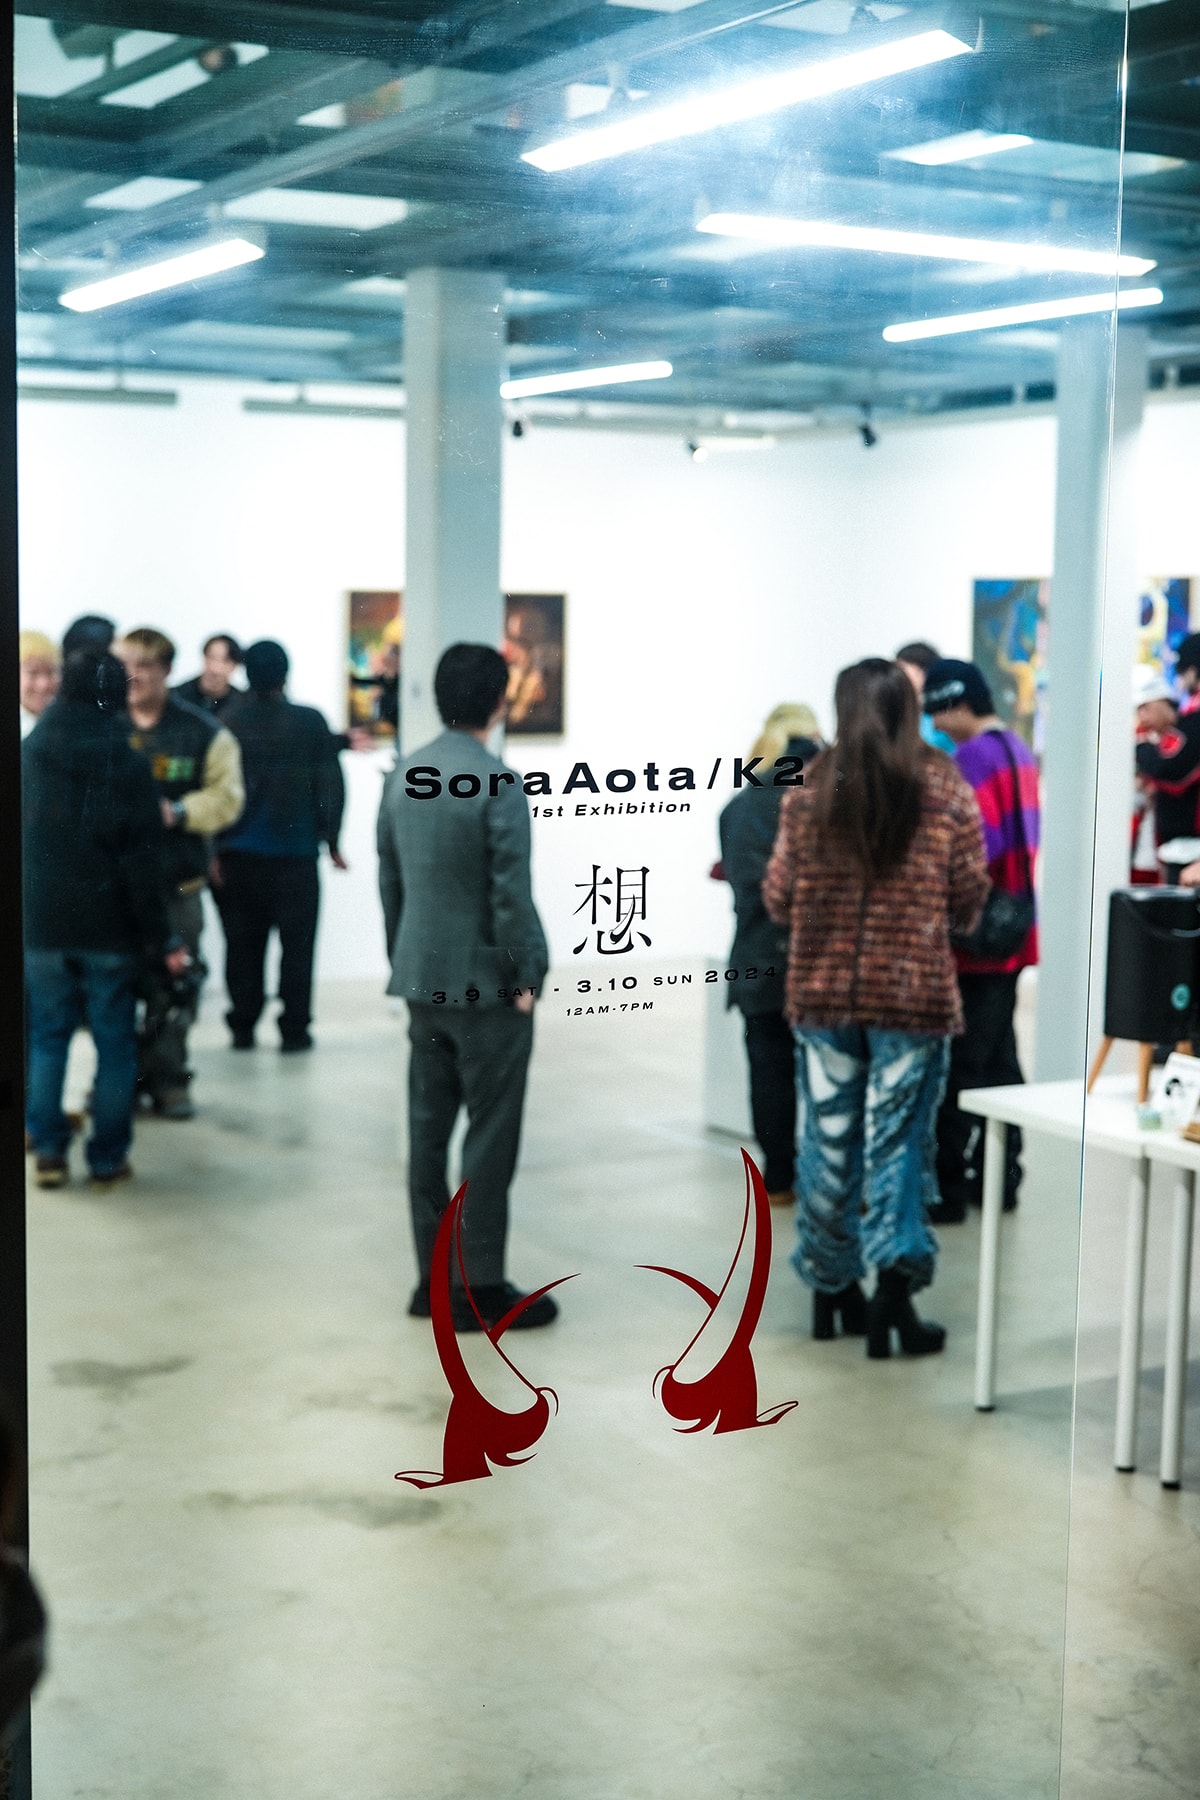 デジタルアーティスト Sora Aota/K2 が挑むアナログ世界と視えた先 | Interviews インタビュー